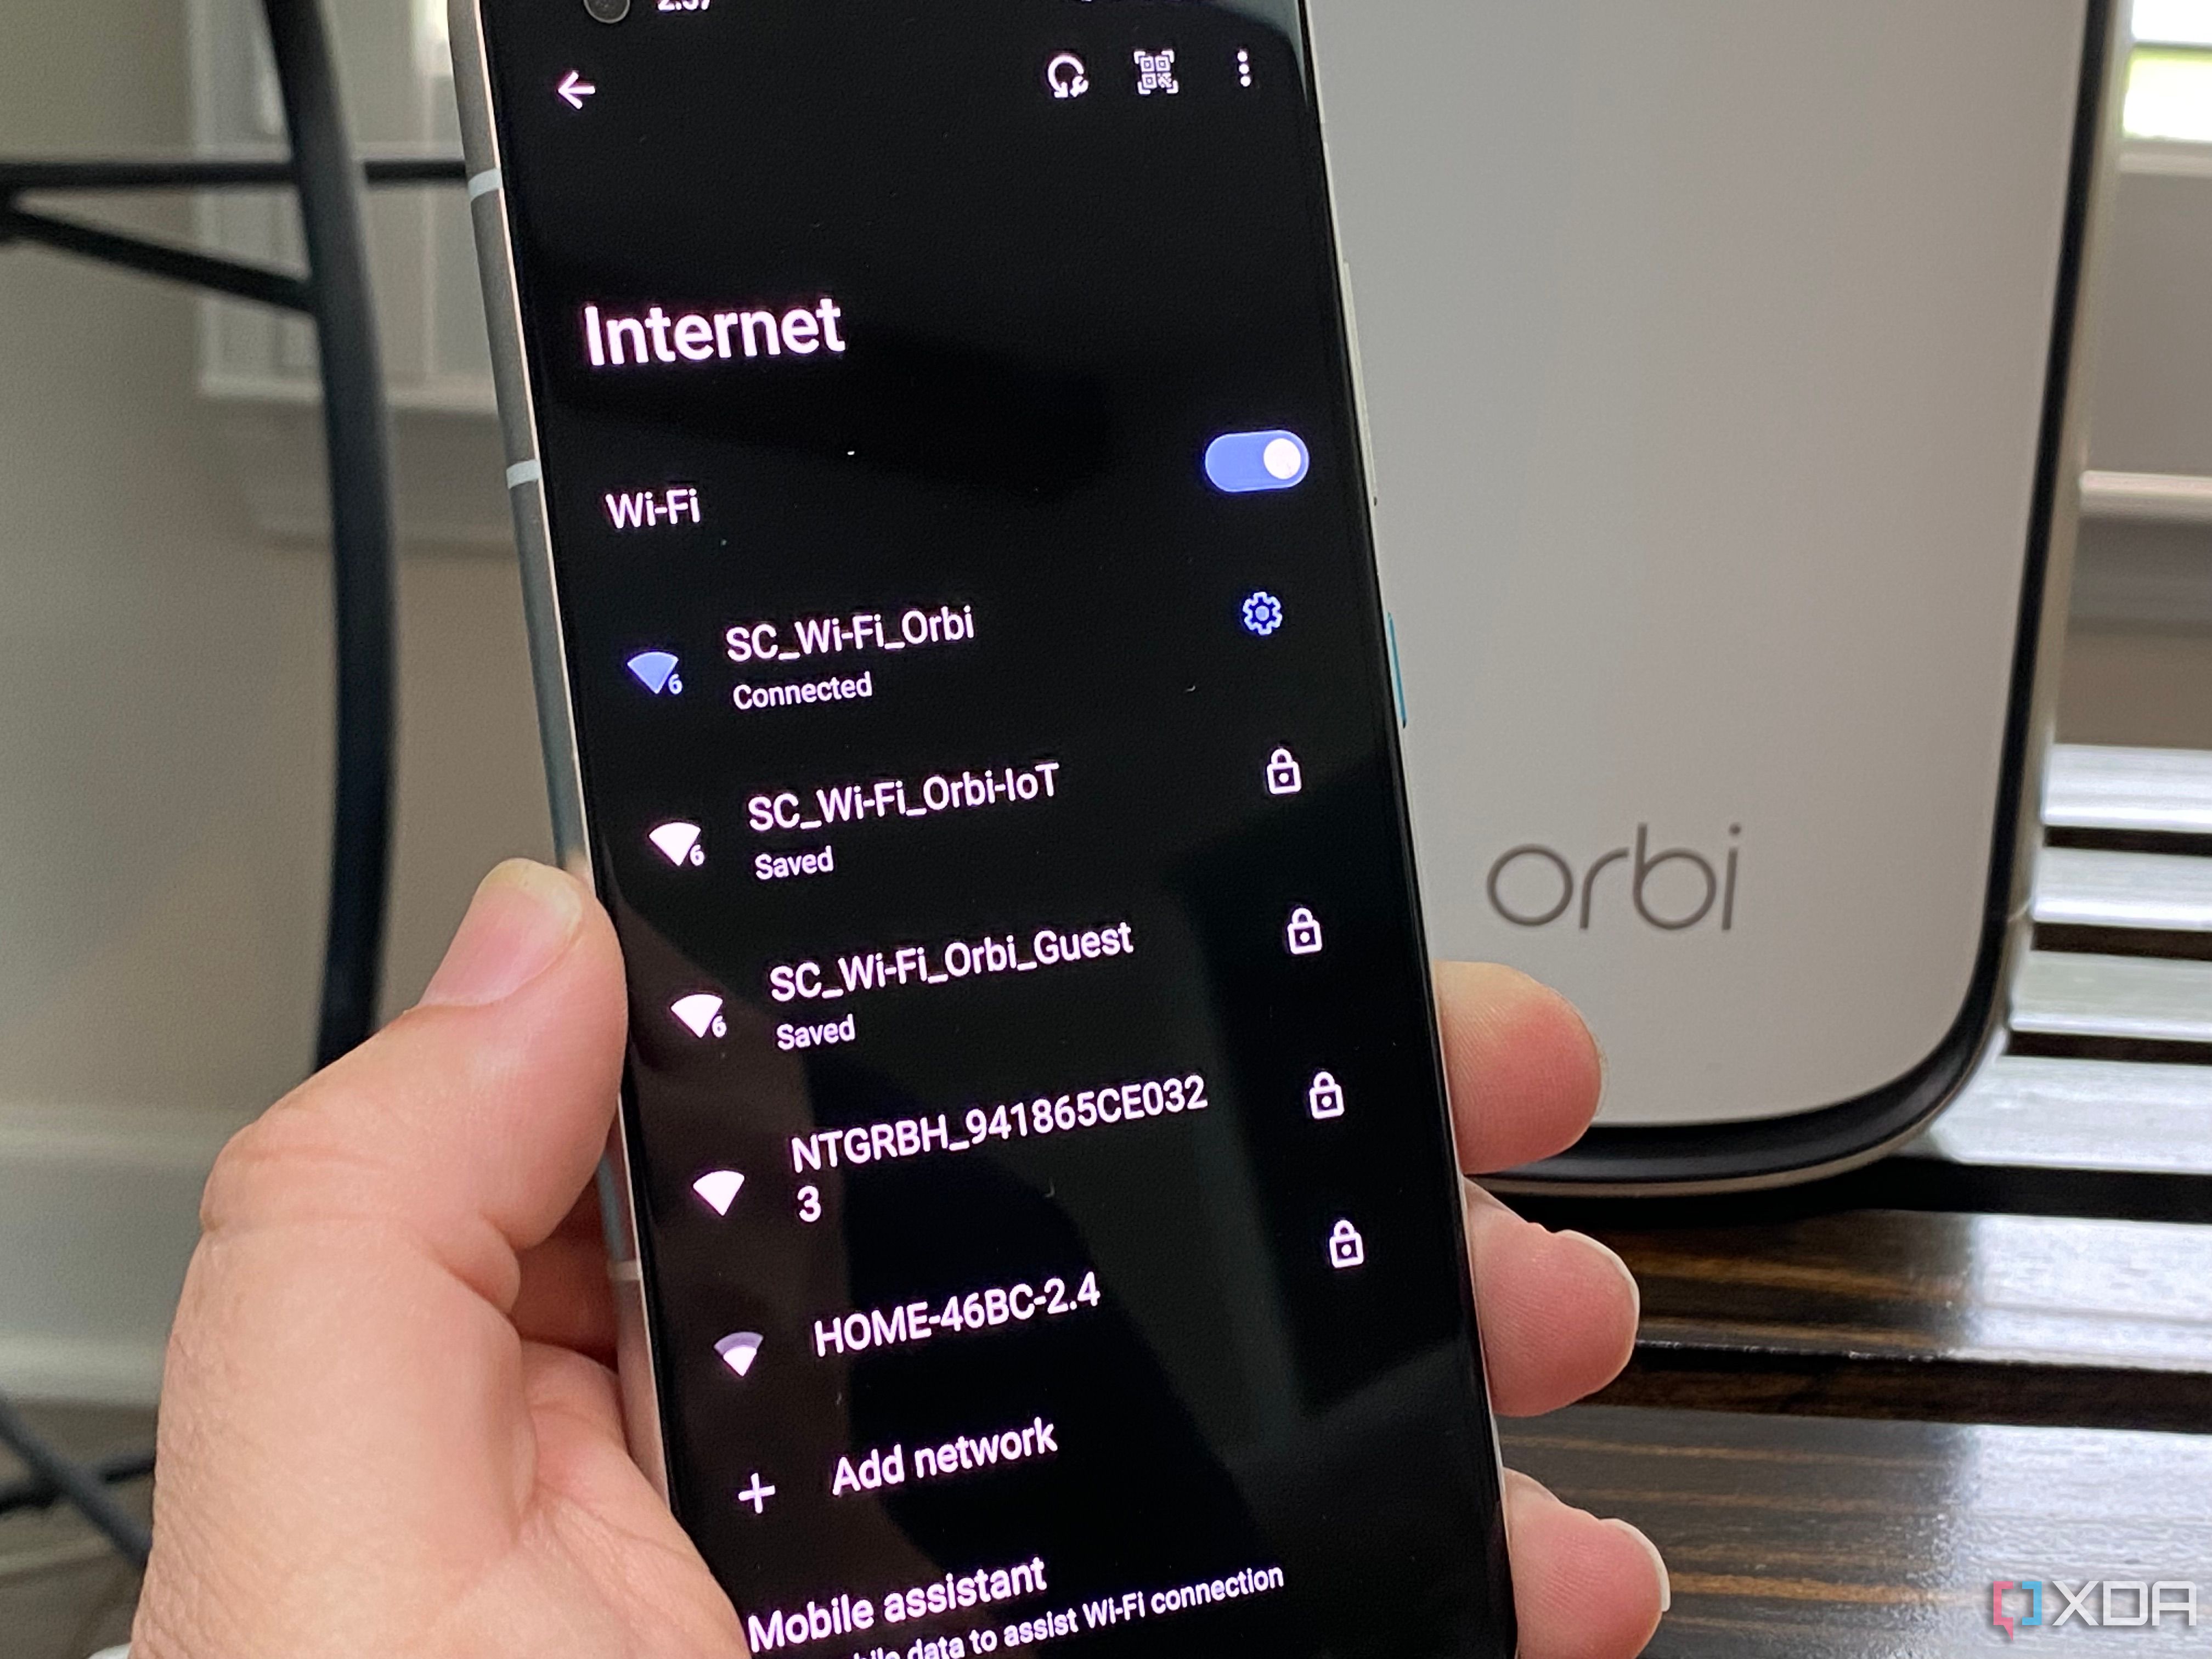 Маршрутизатор Netgear с IoT, гостевым режимом и стандартным Wi-Fi, показанный на телефоне Android